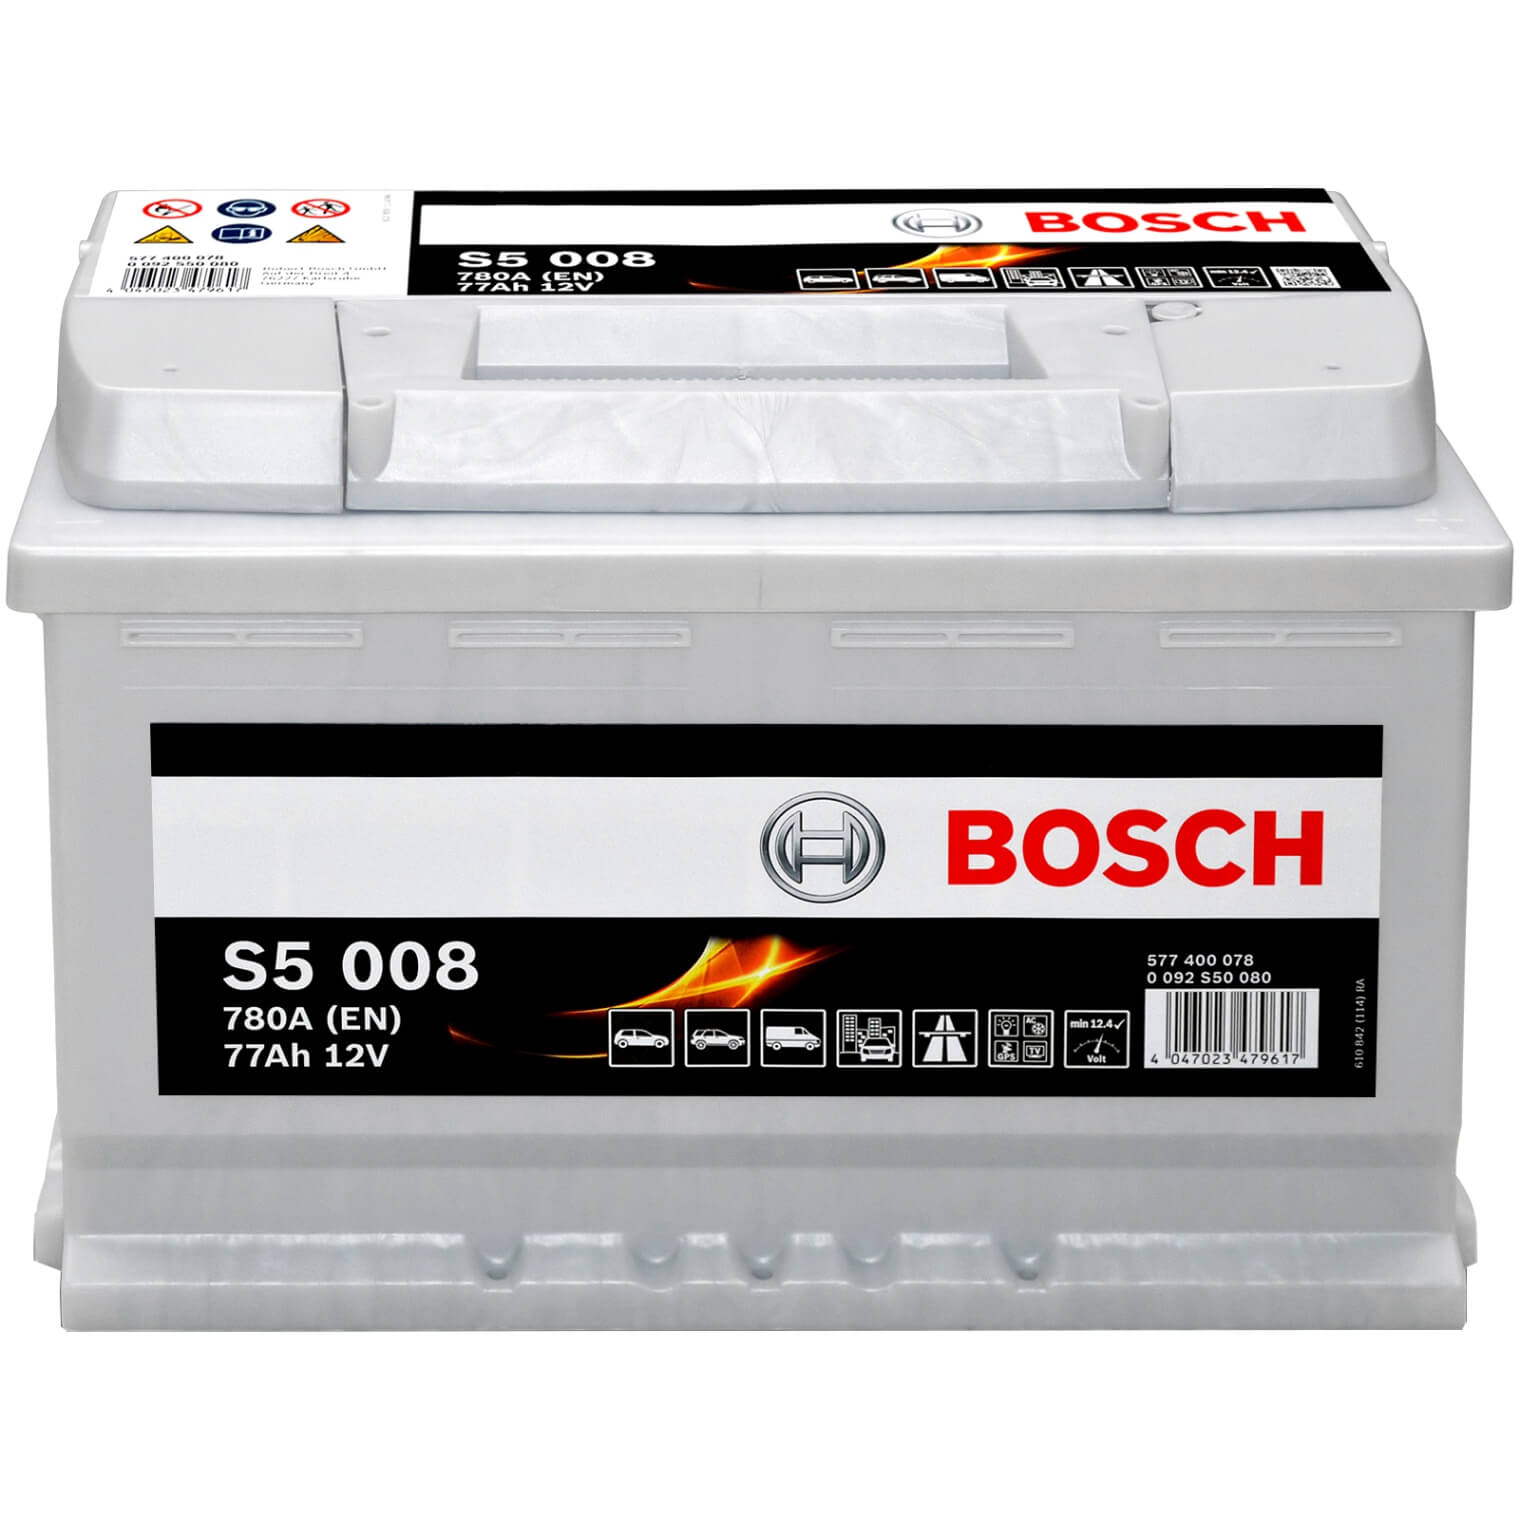 Achetez Bosch - Sos Batterie by Groupe qodsautomobile